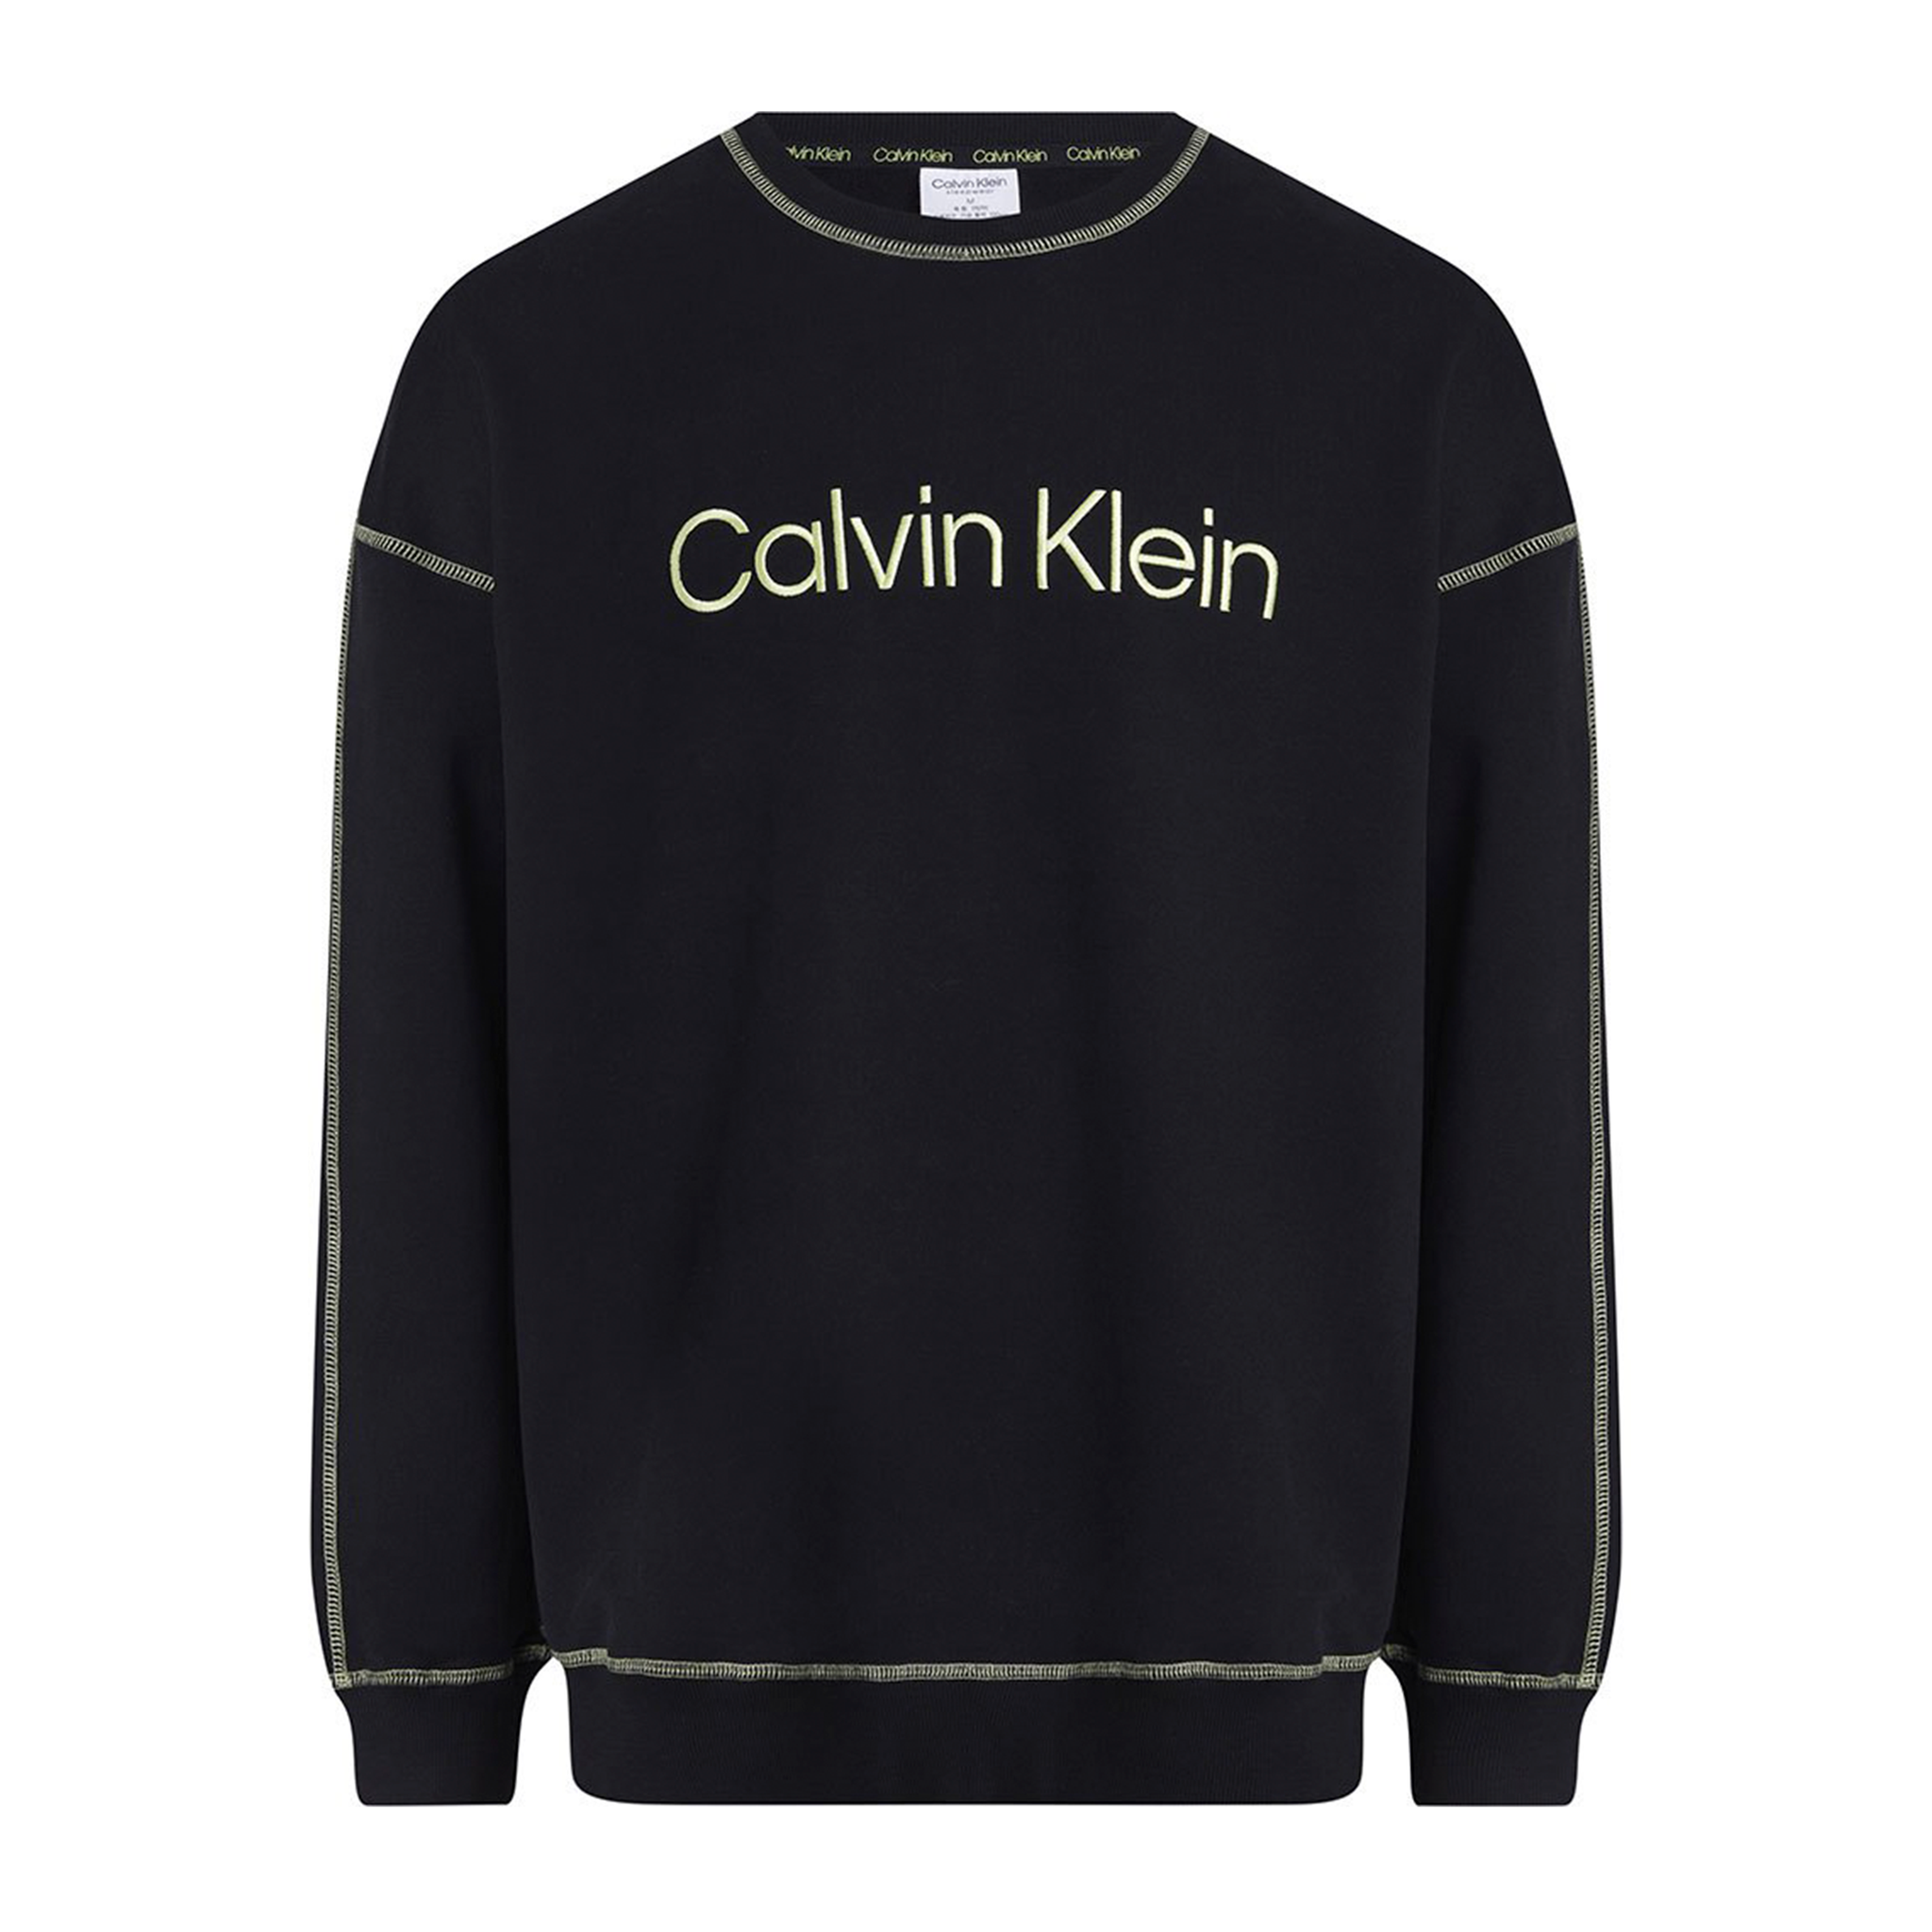 Fattal Beauty – Buy Calvin Klein Loungewear Set Long Sleeve Black  Sweatshirt in Lebanon